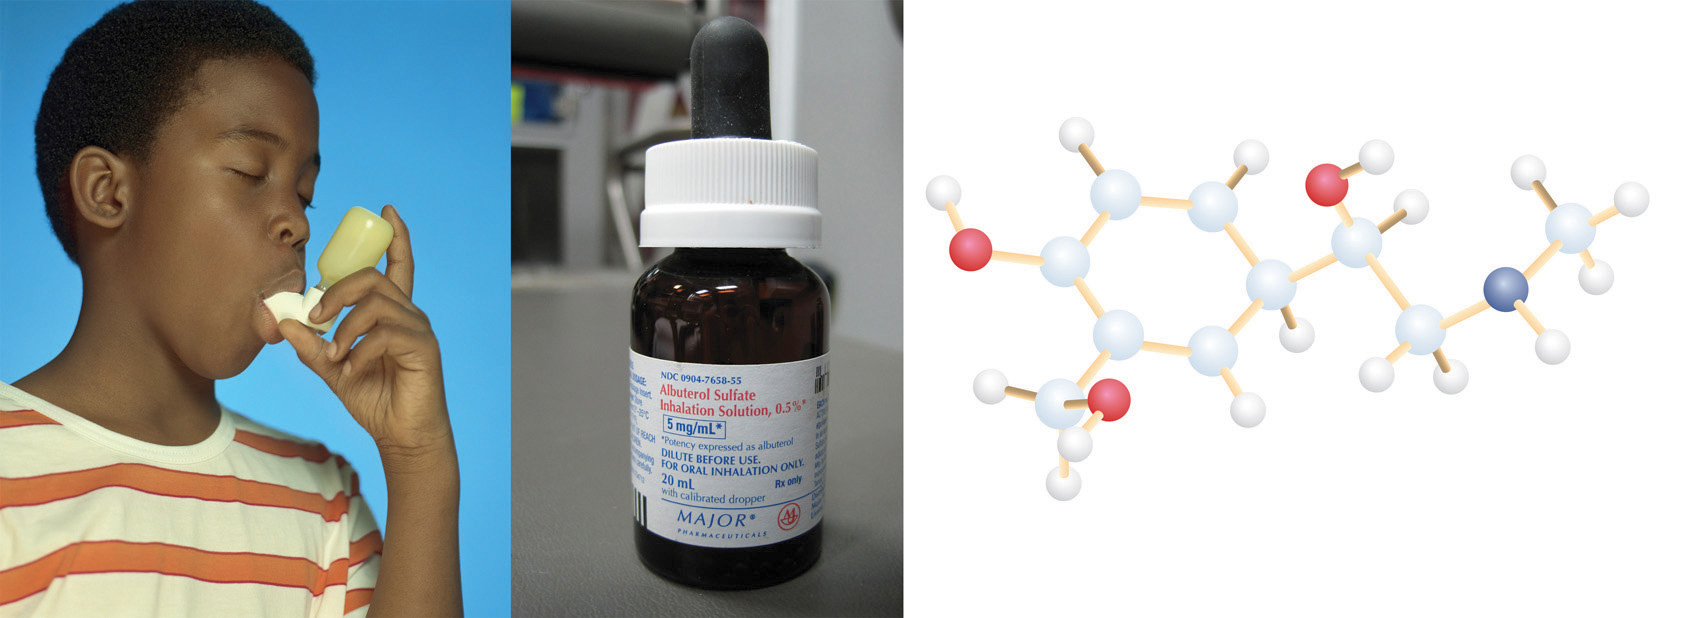 En tres imágenes combinadas se muestra un niño que usa un inhalador de albuterol, el recipiente de medicamento para albuterol y un modelo molecular de la molécula de albuterol.